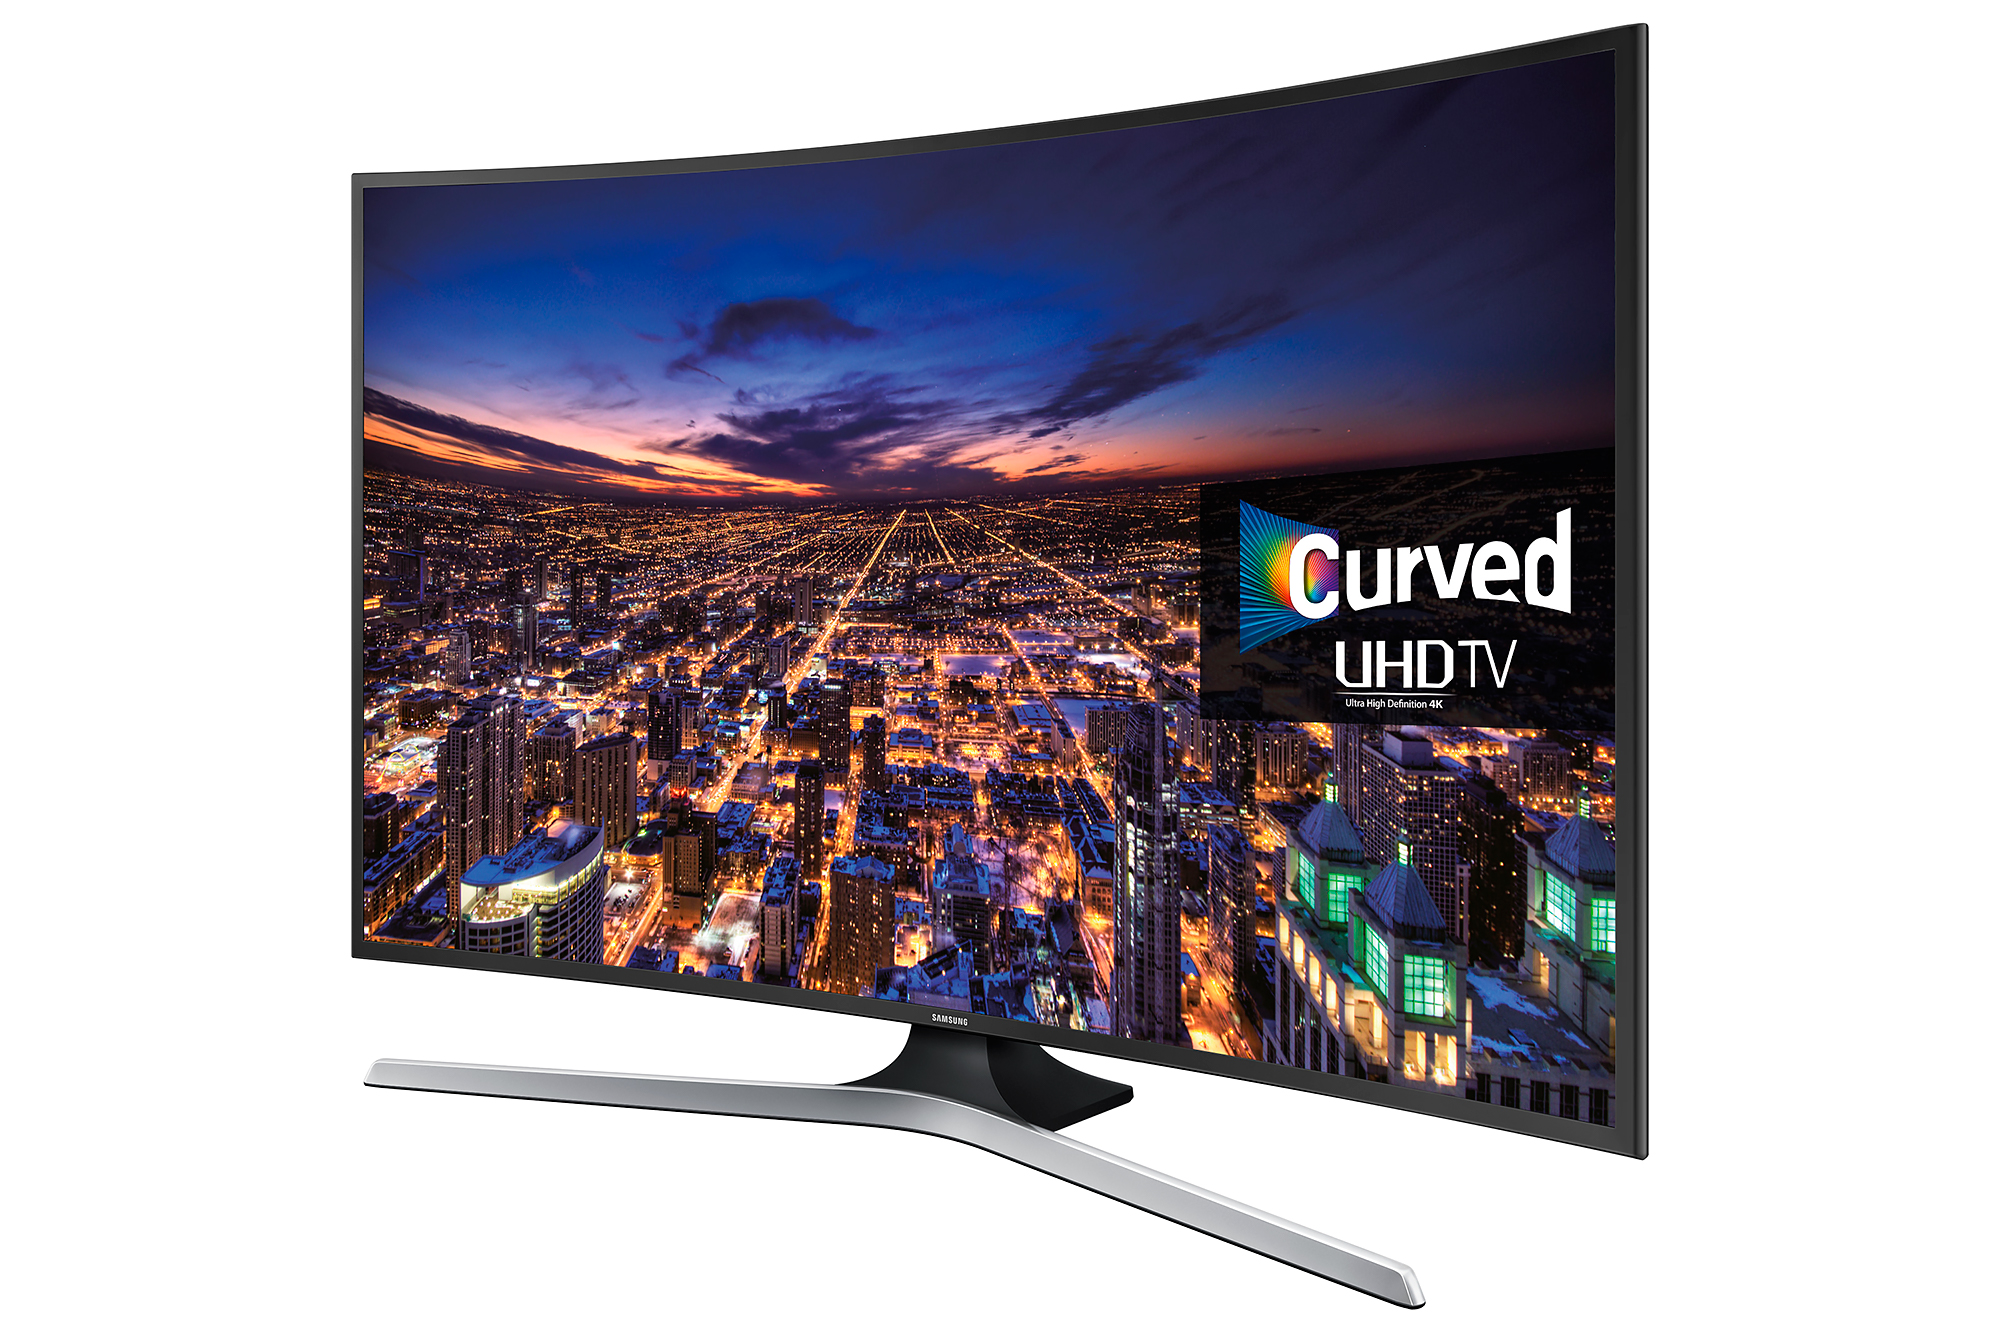 Телевизоры series 6. Samsung 6 Series 40 Smart TV. Samsung Curved UHD TV 6 Series 40.